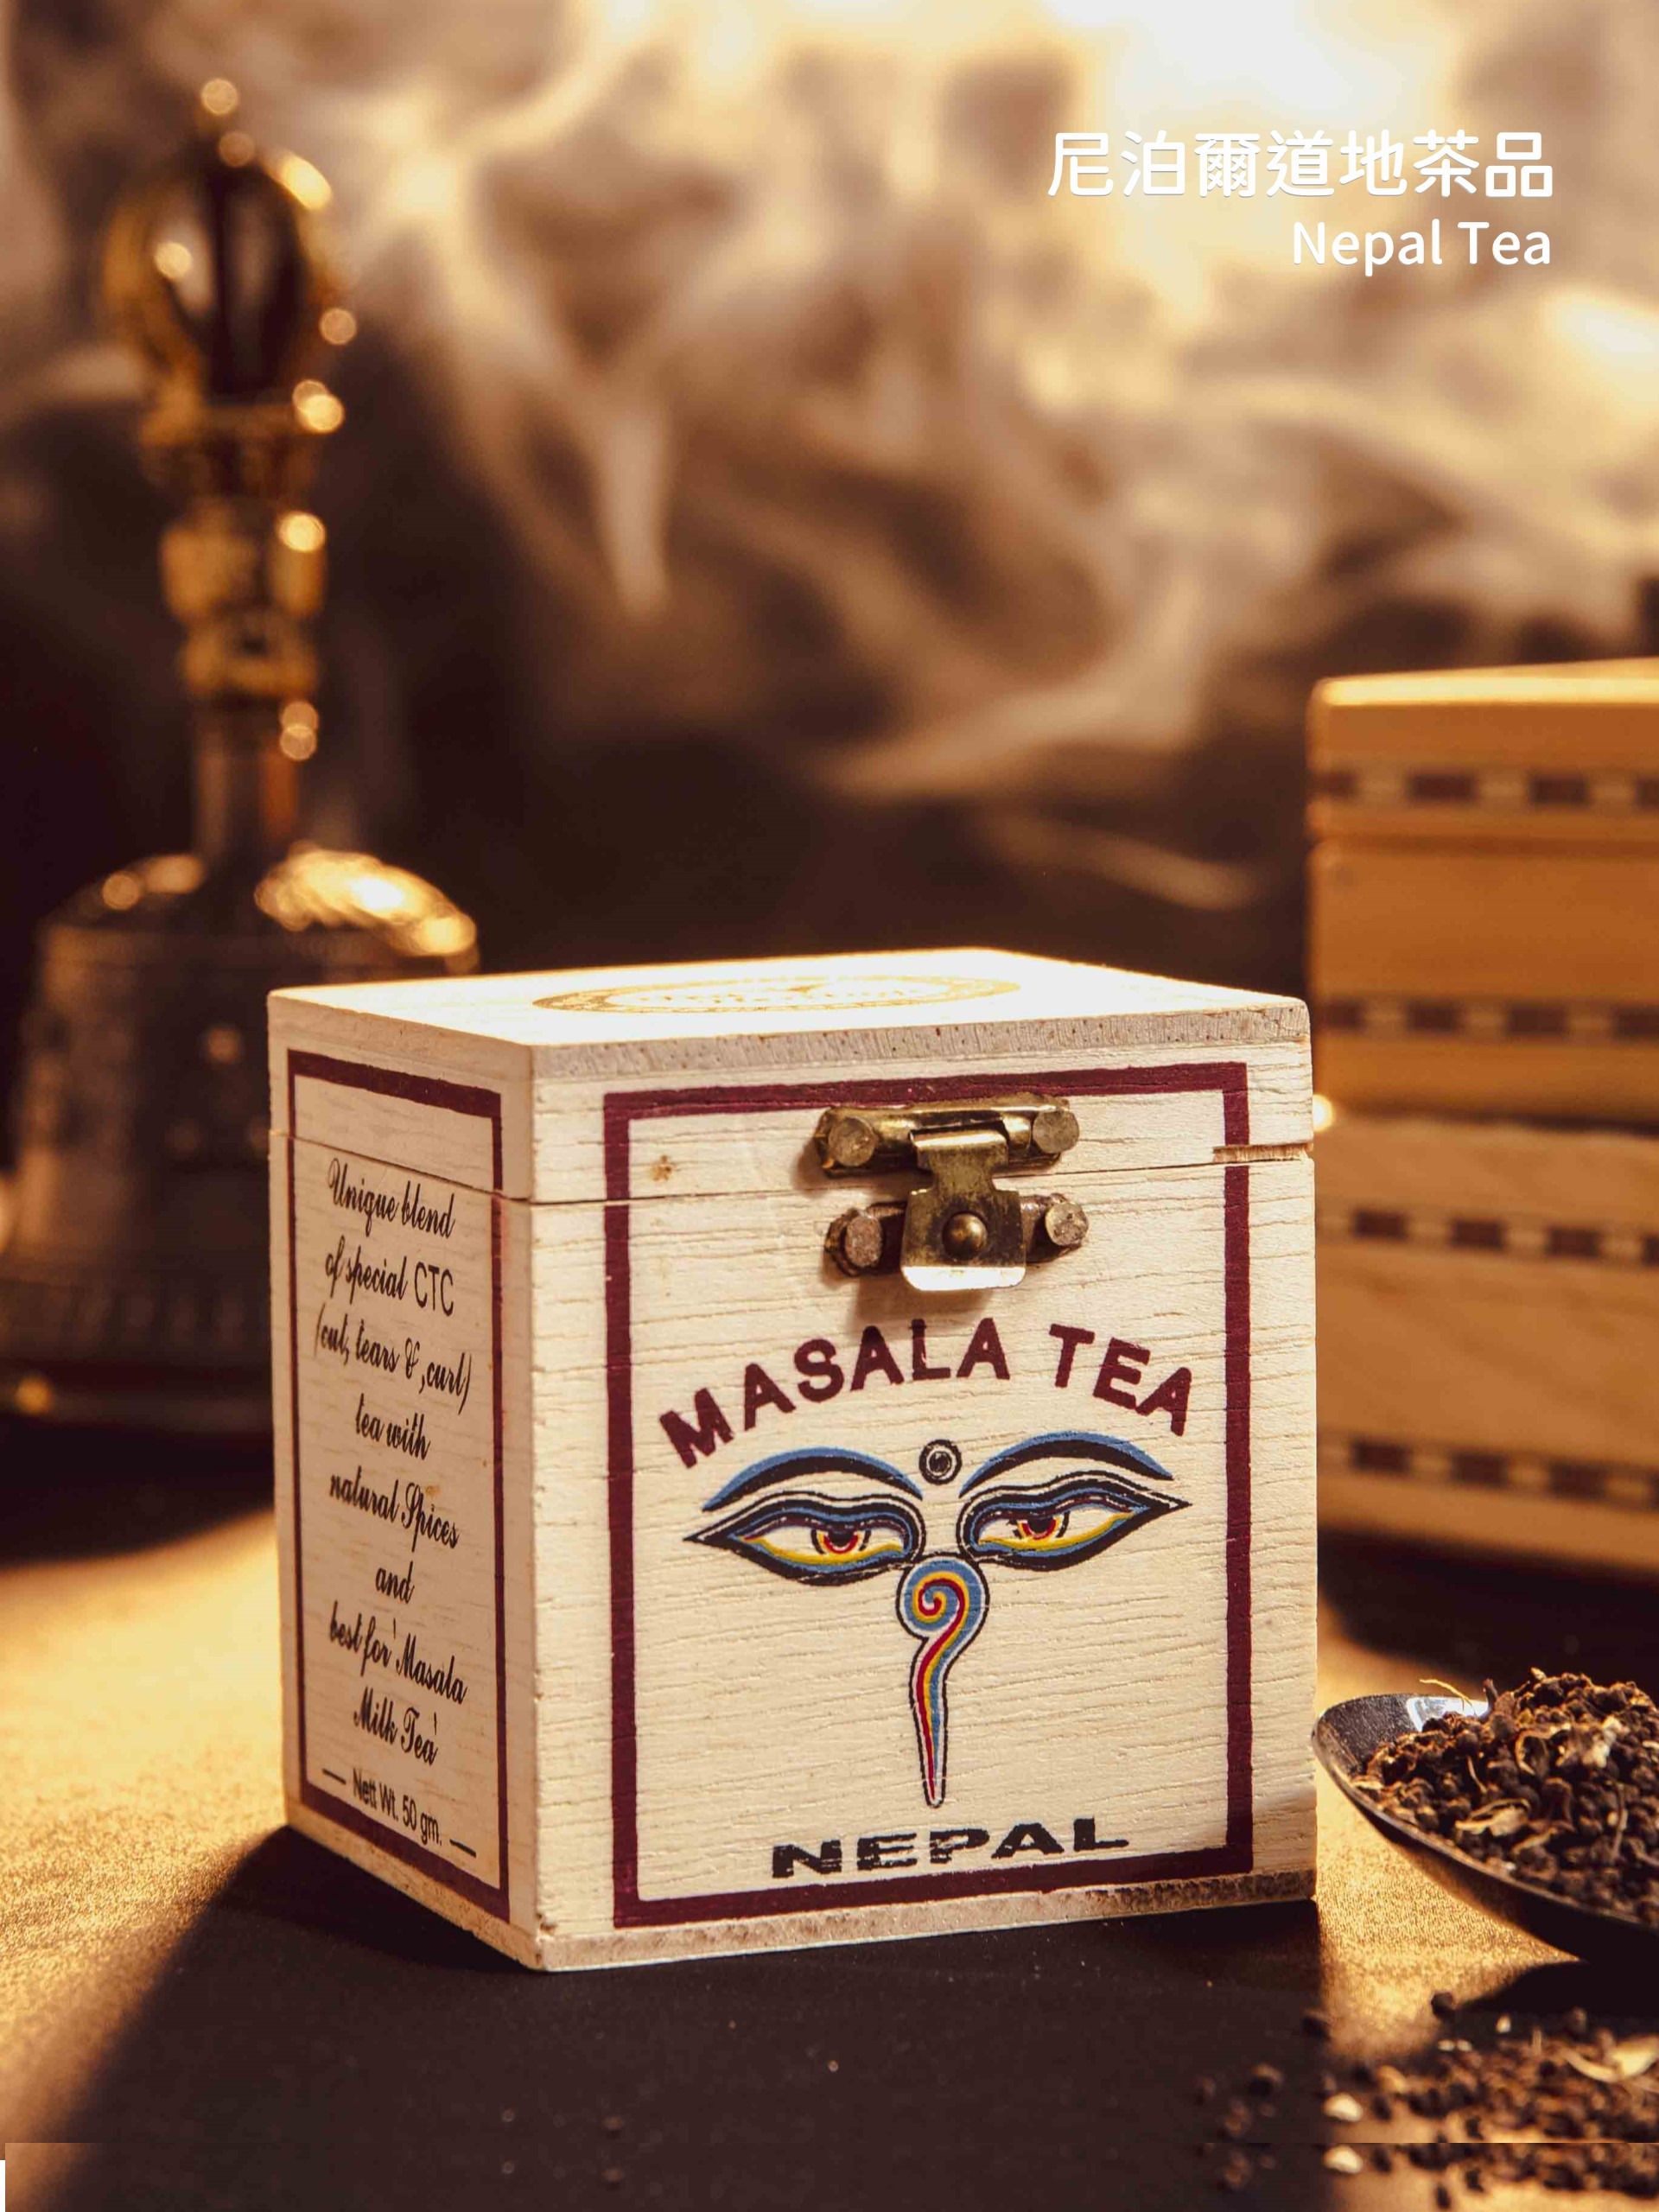 馬薩拉茶,印度拉茶,奶茶